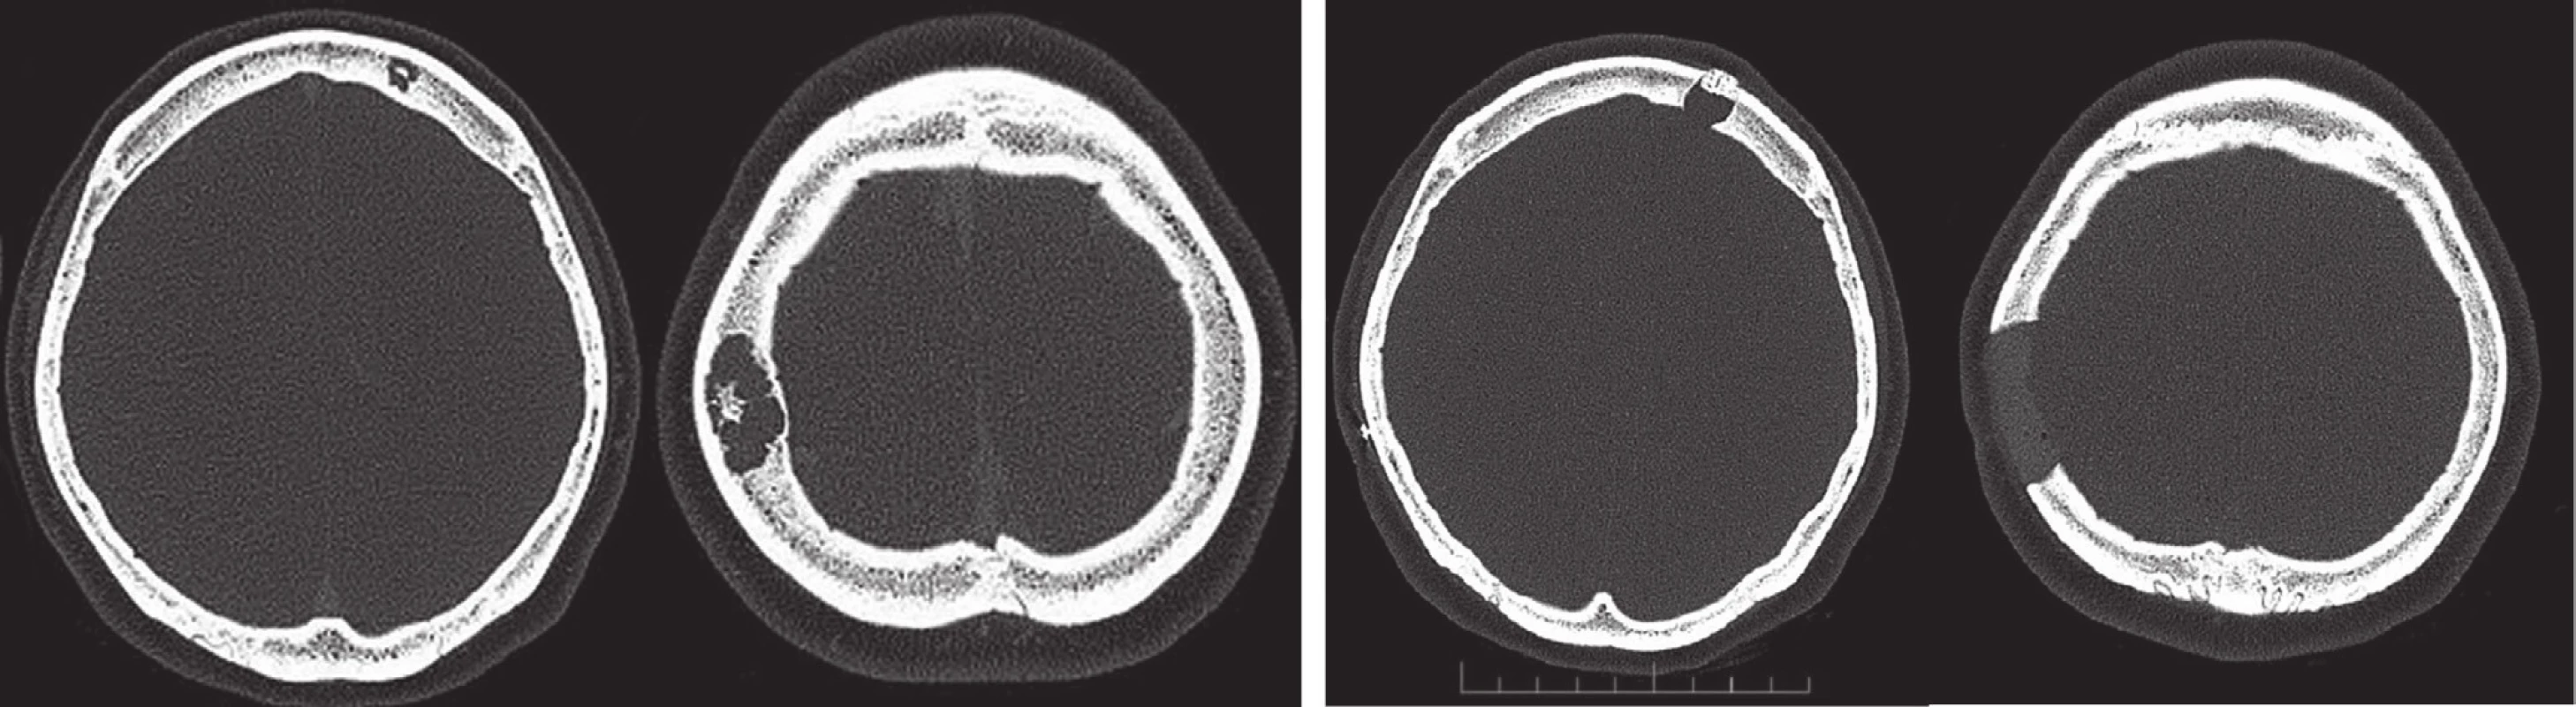 CT hlavy před a po neurochirurgickém zákroku, vybrané transaxiální řezy – osteolytická ložiska v kalvě frontálně vlevo a parietálně vpravo.